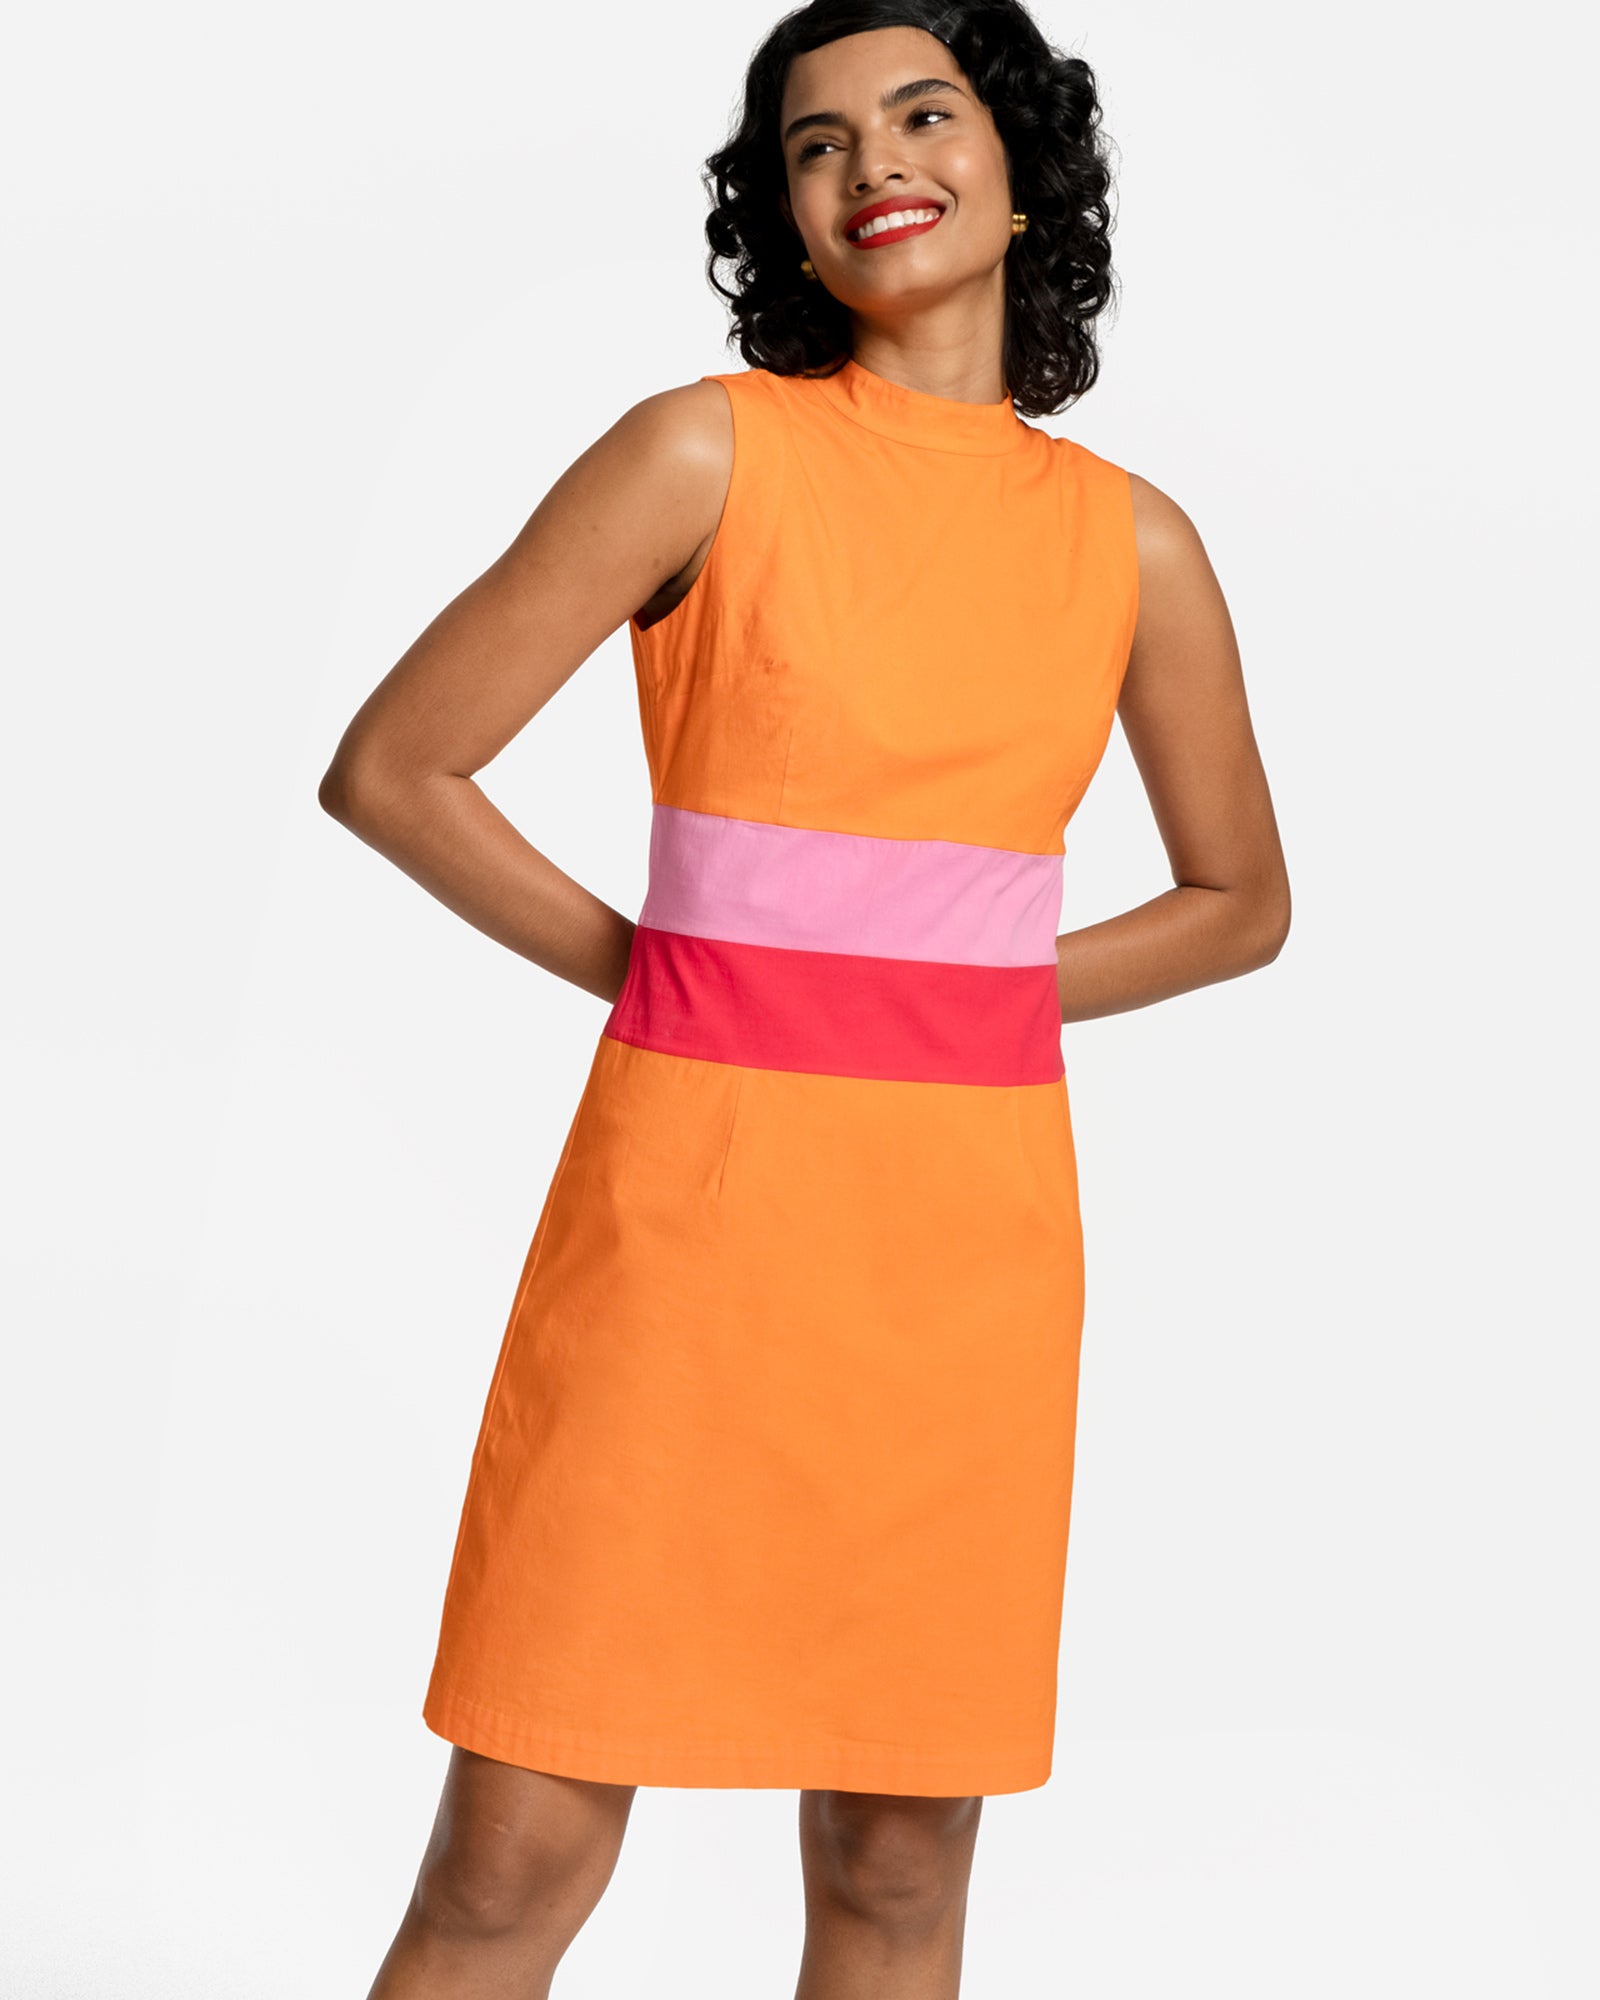 Simplicity Dress Orange Multi